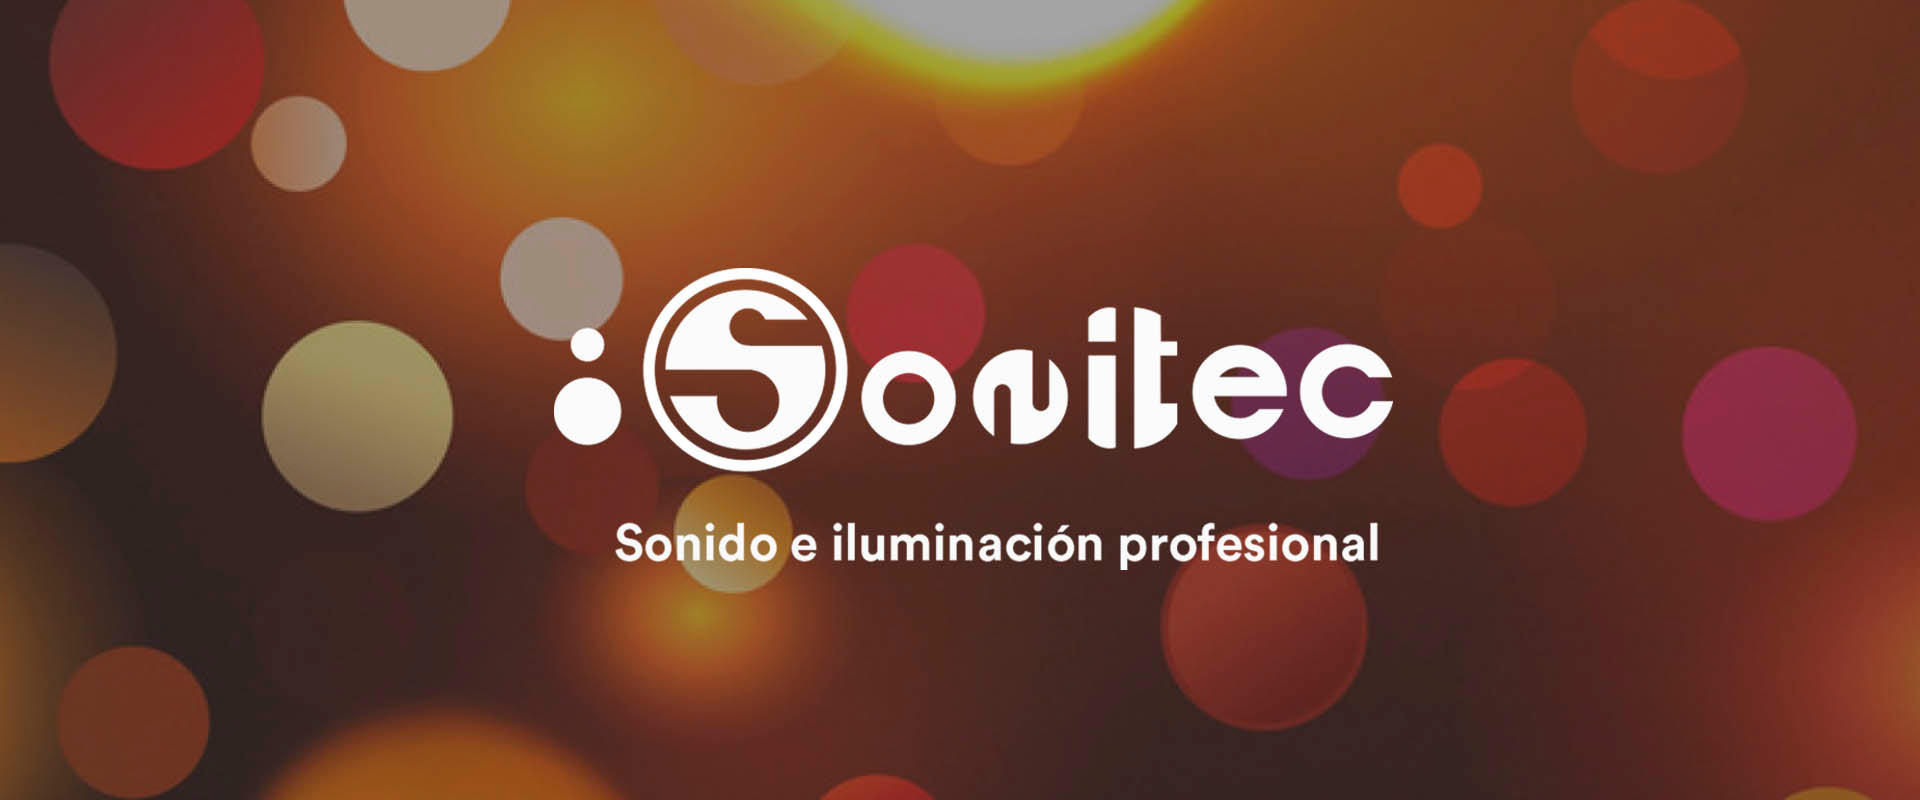 Images Sonitec Sonido Profesional